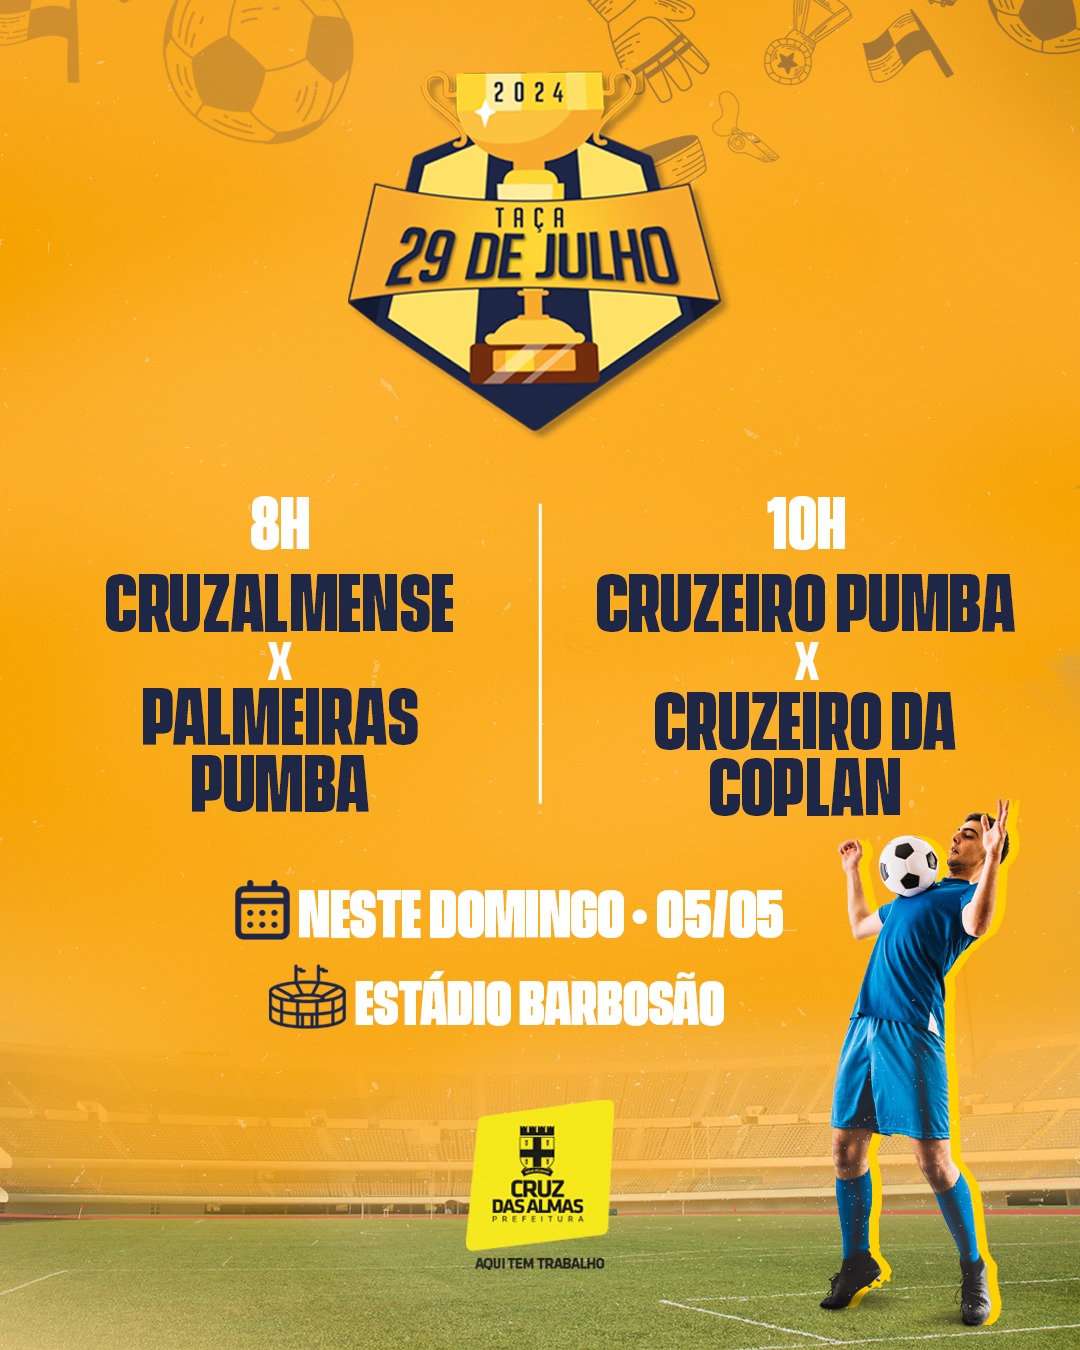 Taça 29 de Julho: Novas disputas do campeonato acontecem neste domingo no estádio do Barbosão